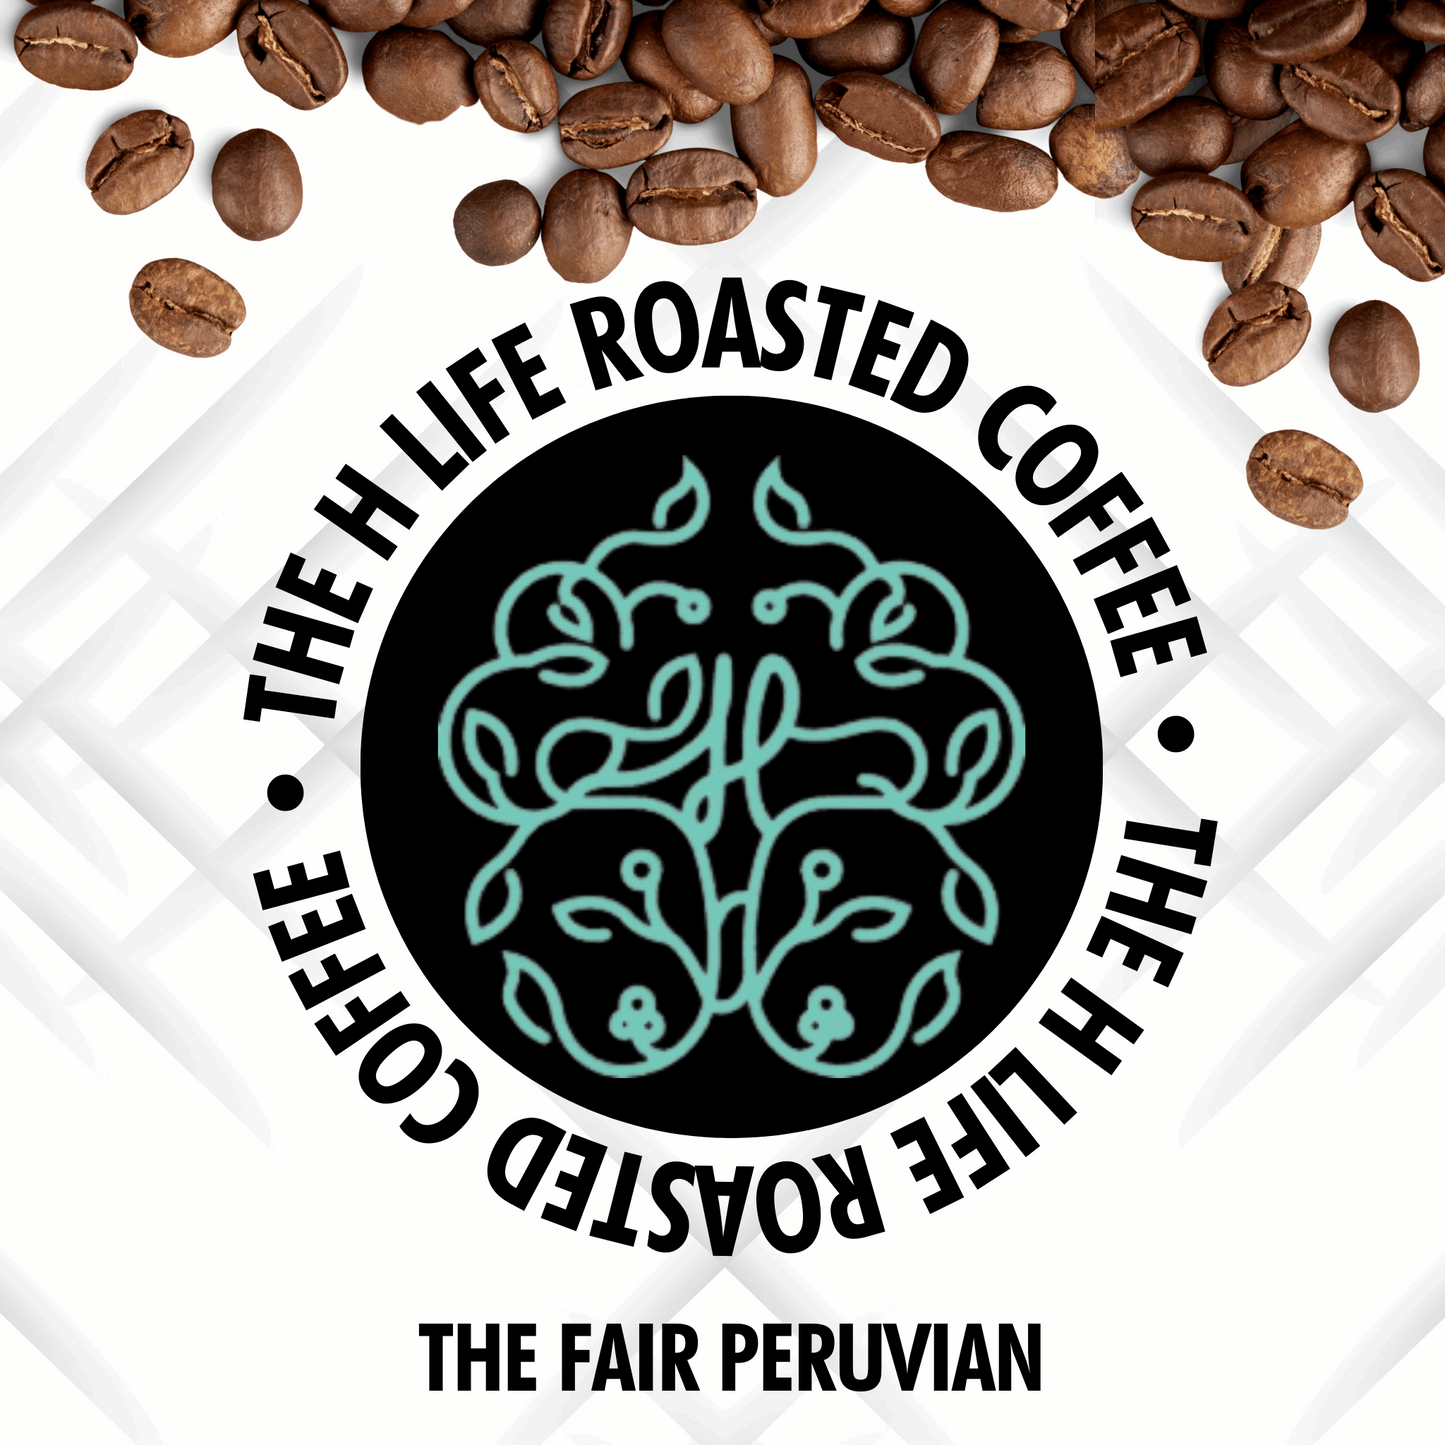 The Fair Peruvian Coffee